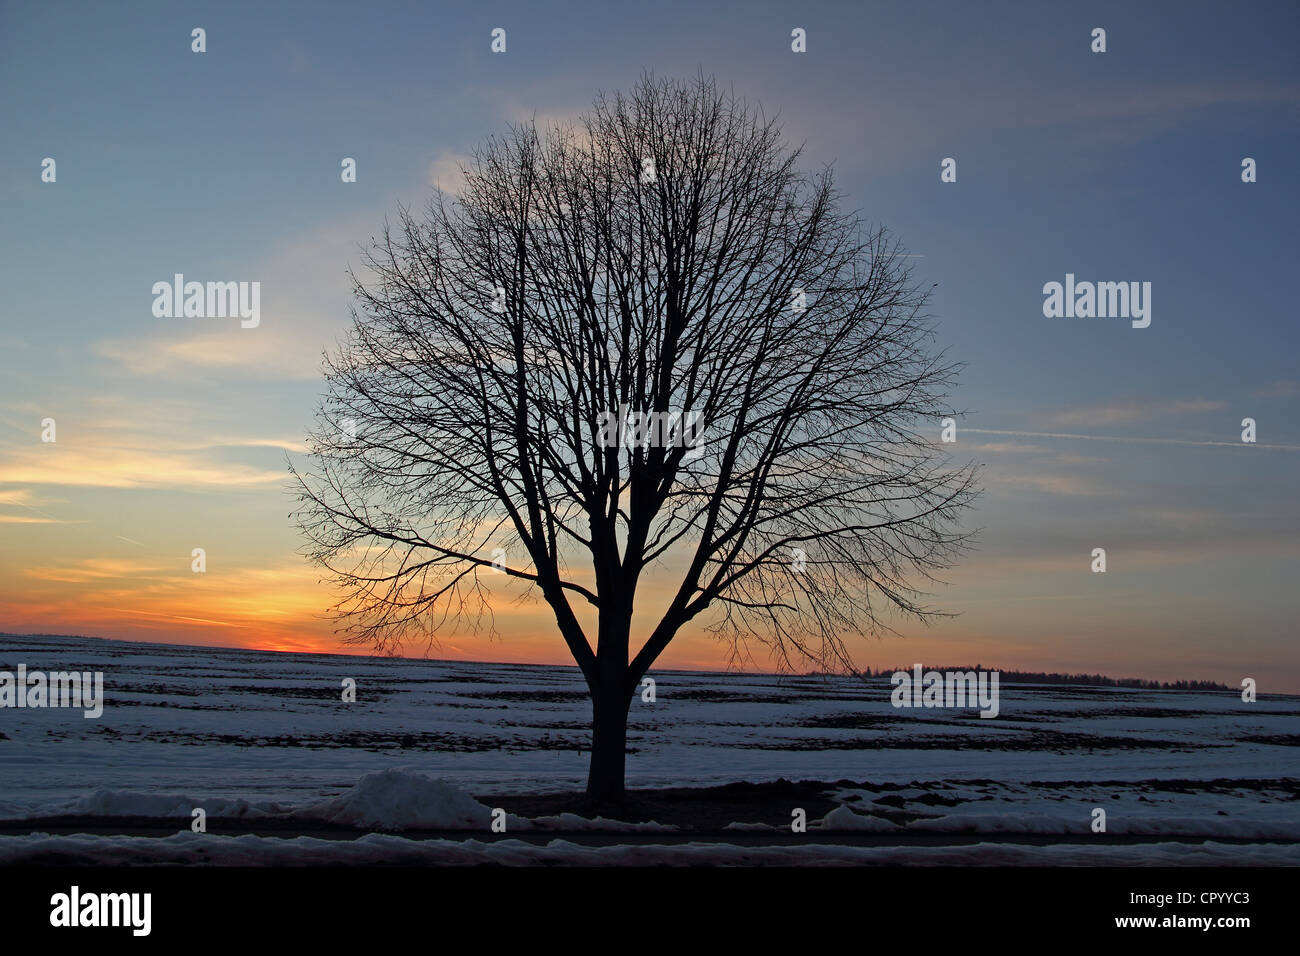 Arbre solitaire dans un paysage d'hiver, crépuscule, district de Biberach, en Haute Souabe, Allemagne, Europe Banque D'Images